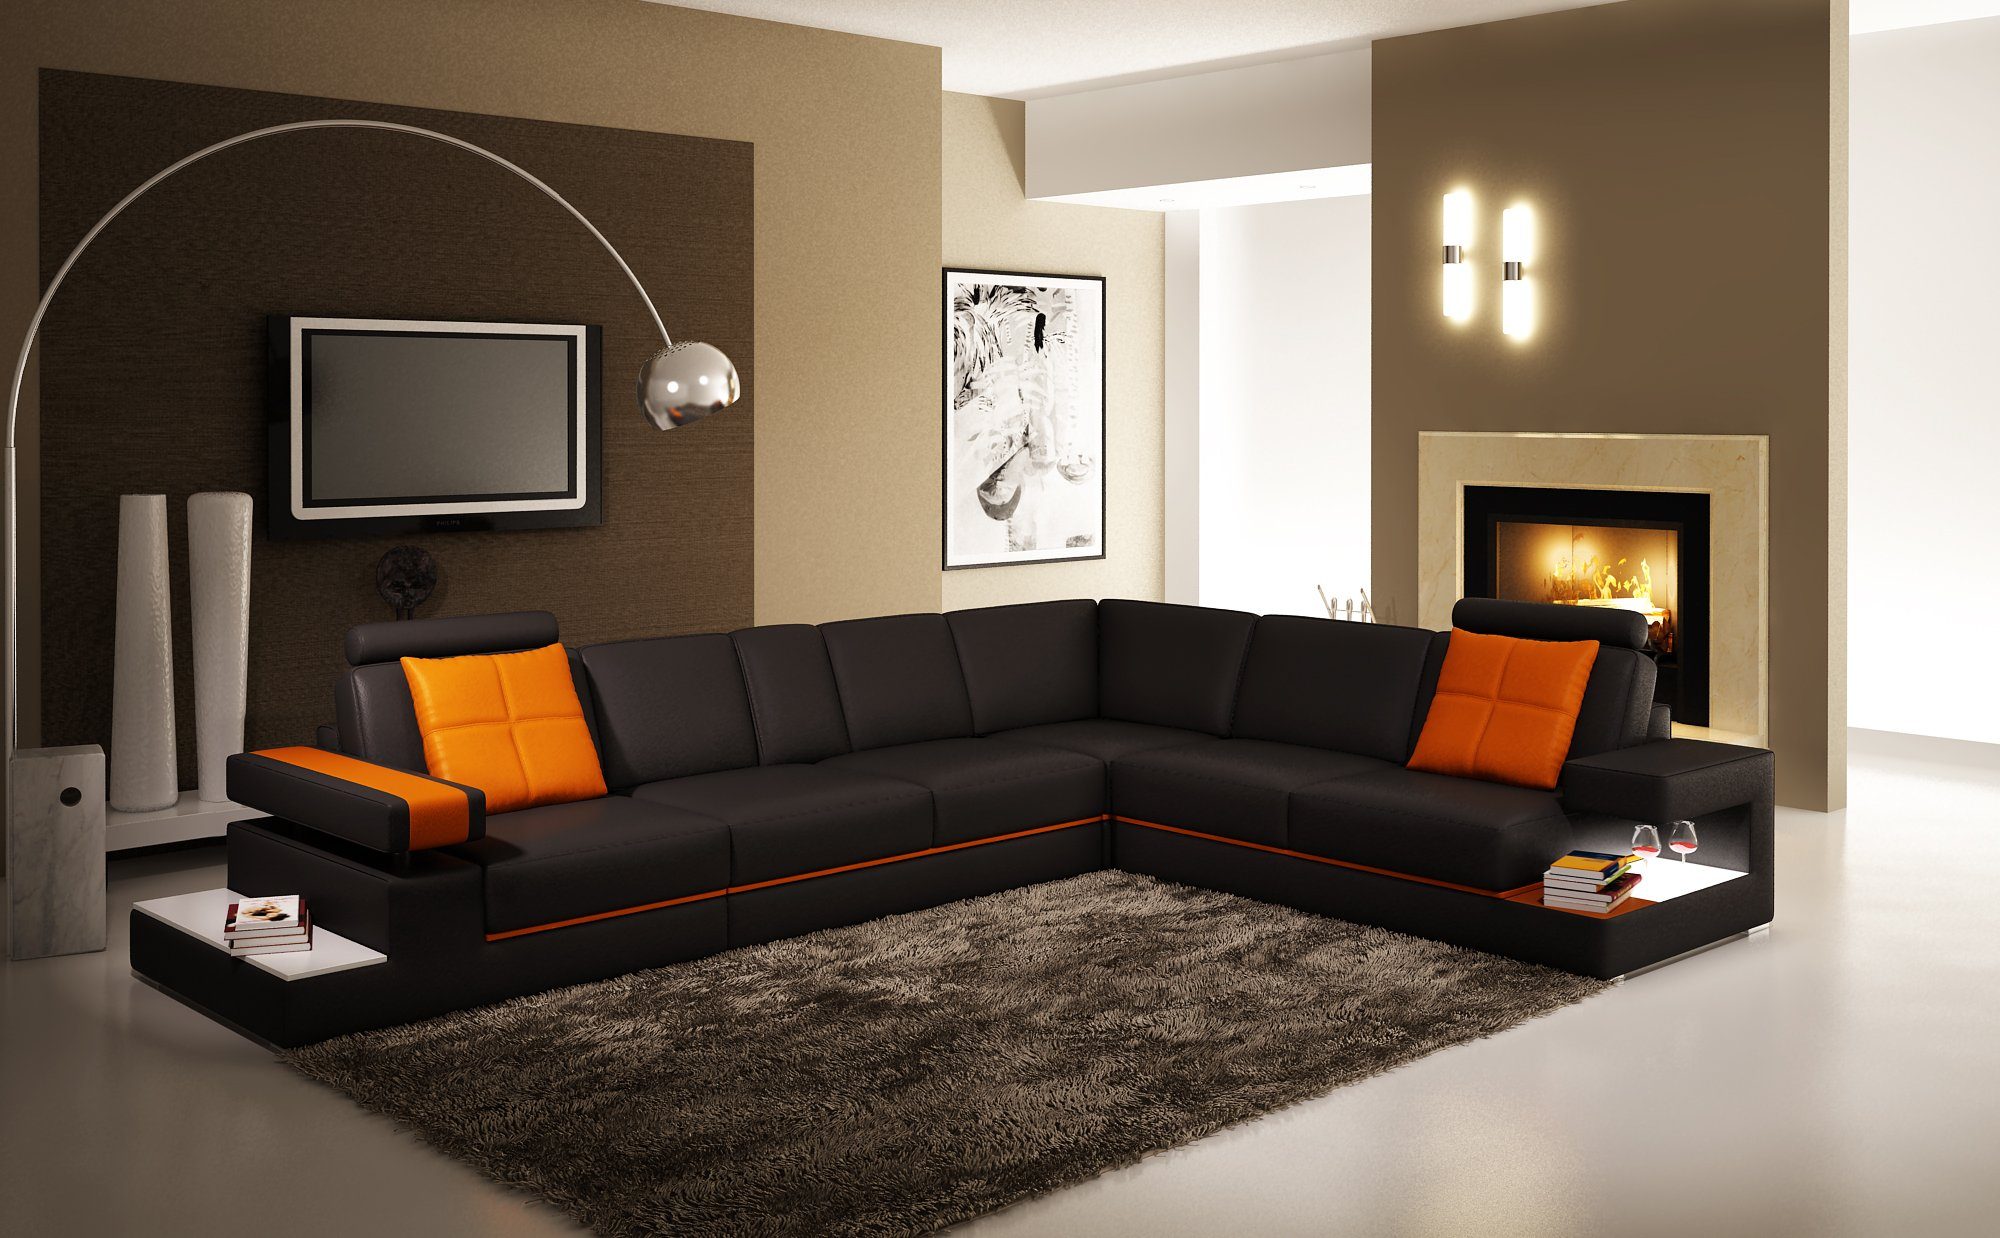 JVmoebel Ecksofa, Moderne Wohnzimmer Couch Ledersofa mit Beleuchtung Sofa  Couchen Leder